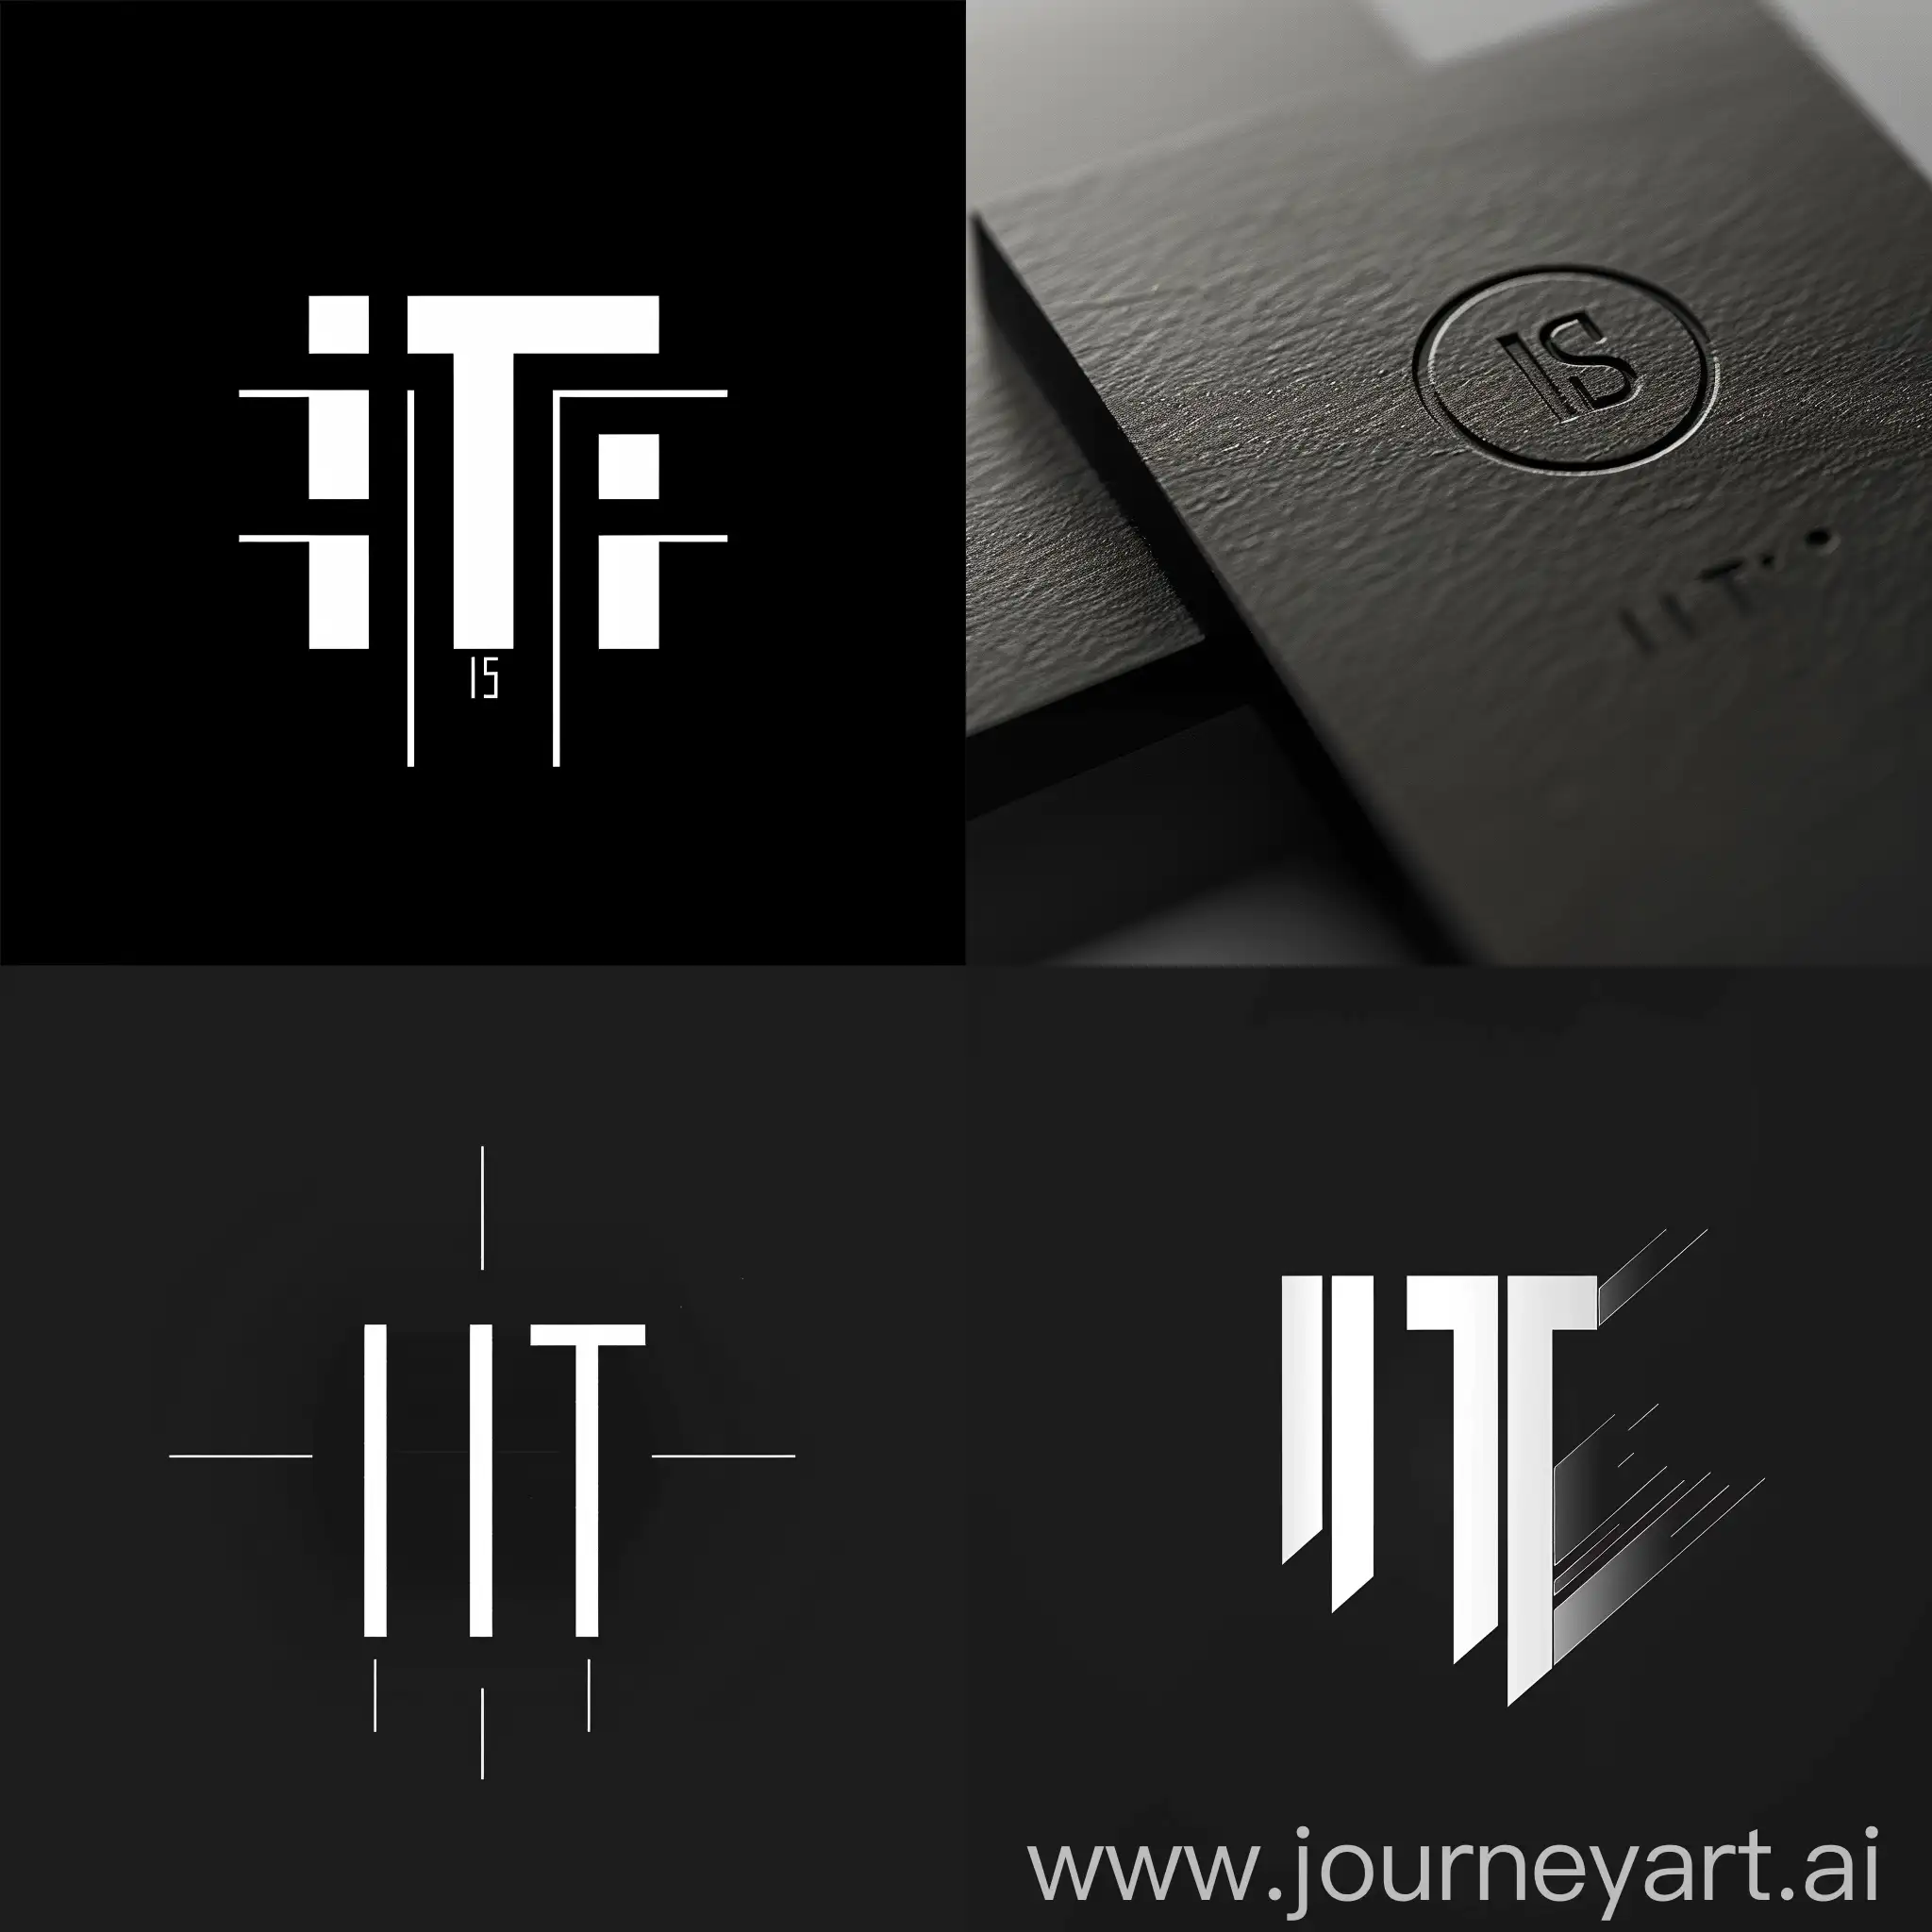 ITS detailing logo minimalism